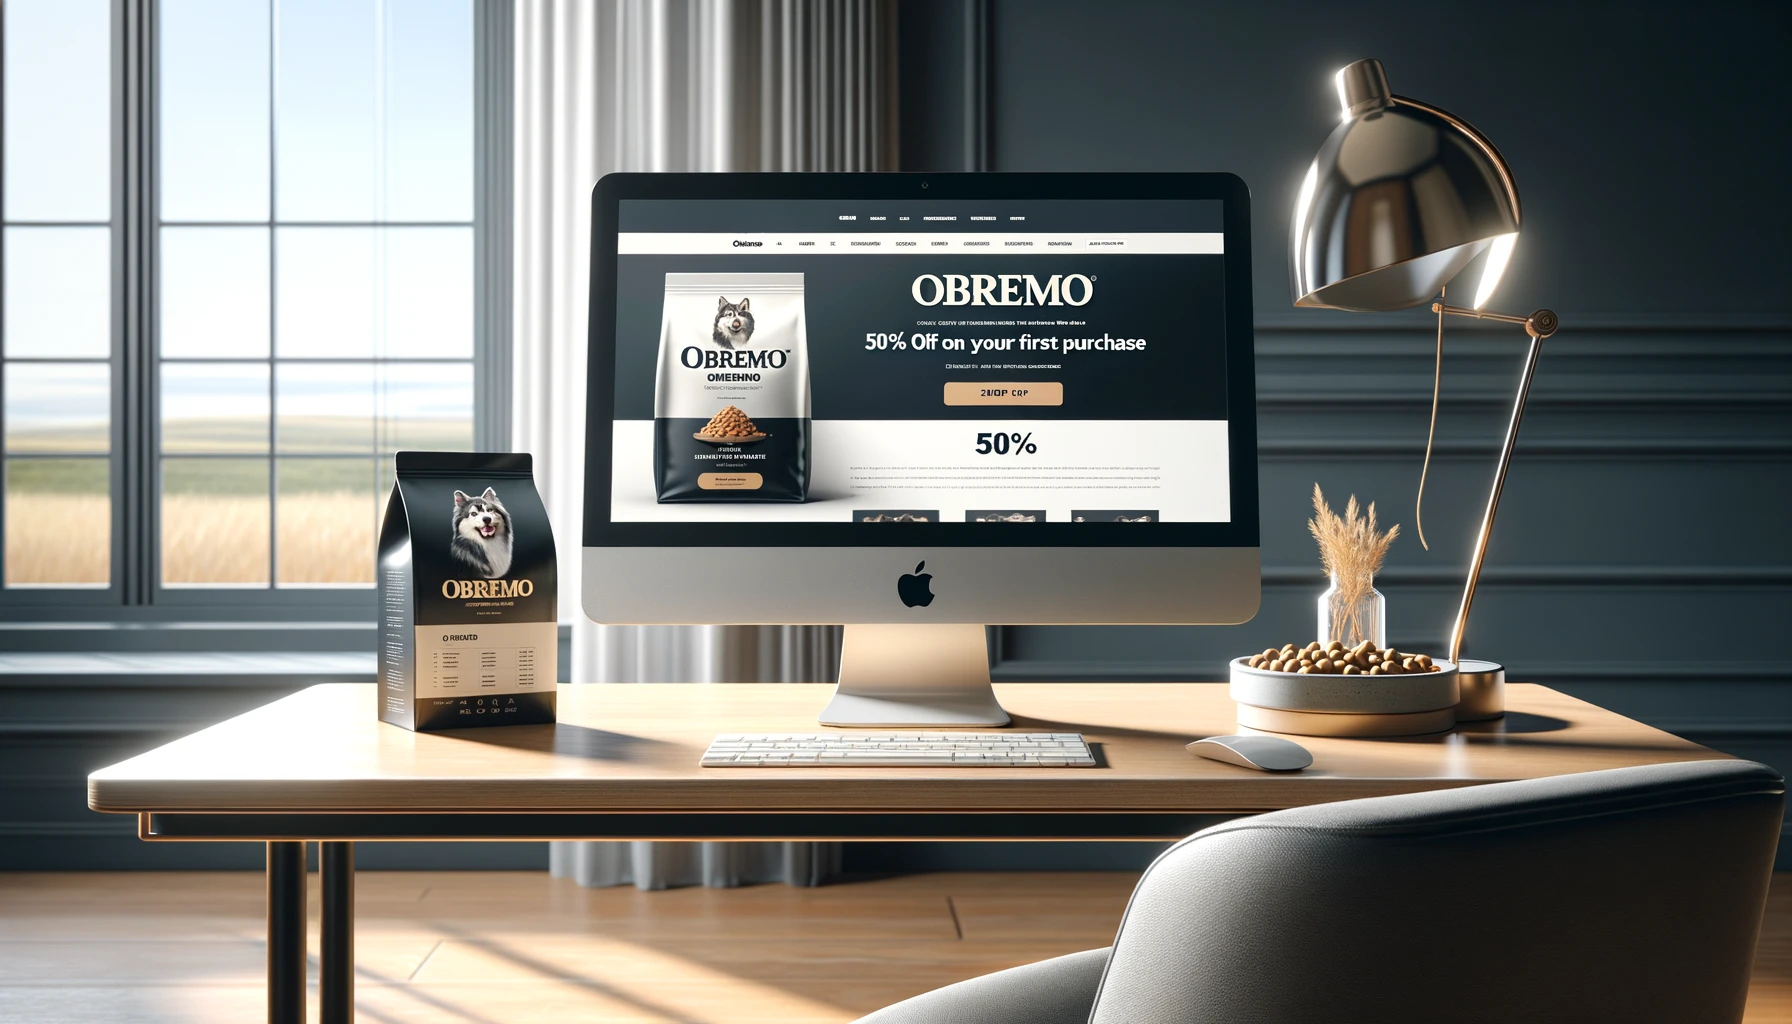 優雅な机の上に置かれたコンピューター画面上の OBREMO 公式 Web サイト。明るく快適なオンライン ショッピング環境での初回購入時に 50% オフの特別オファーが強調されています。